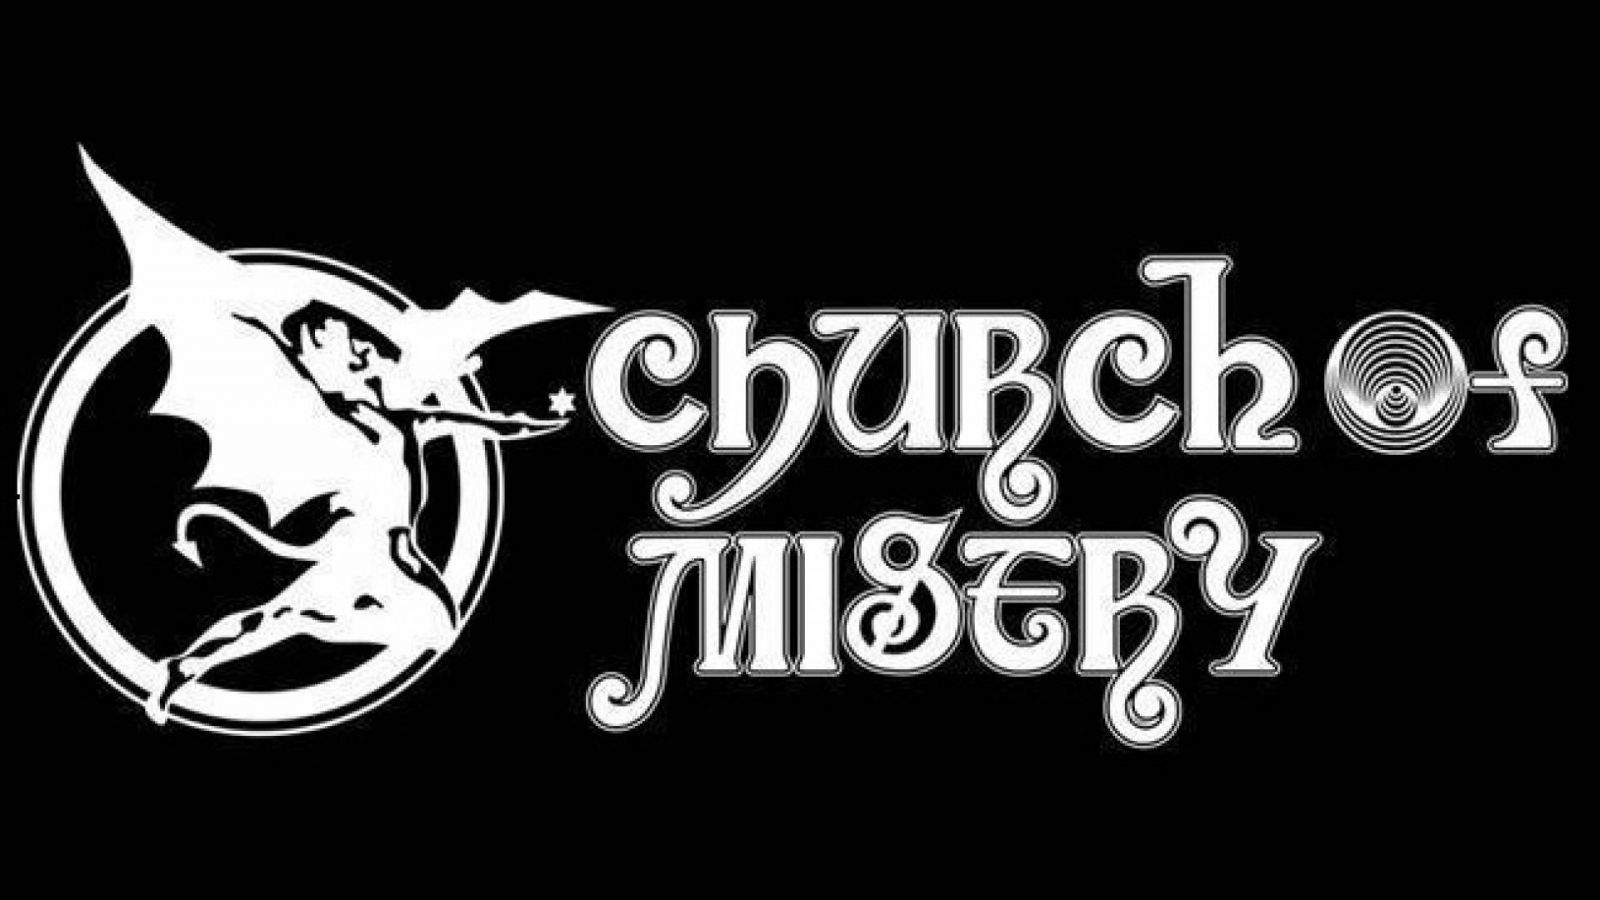 Church of Misery anuncia novo álbum © Church of Misery